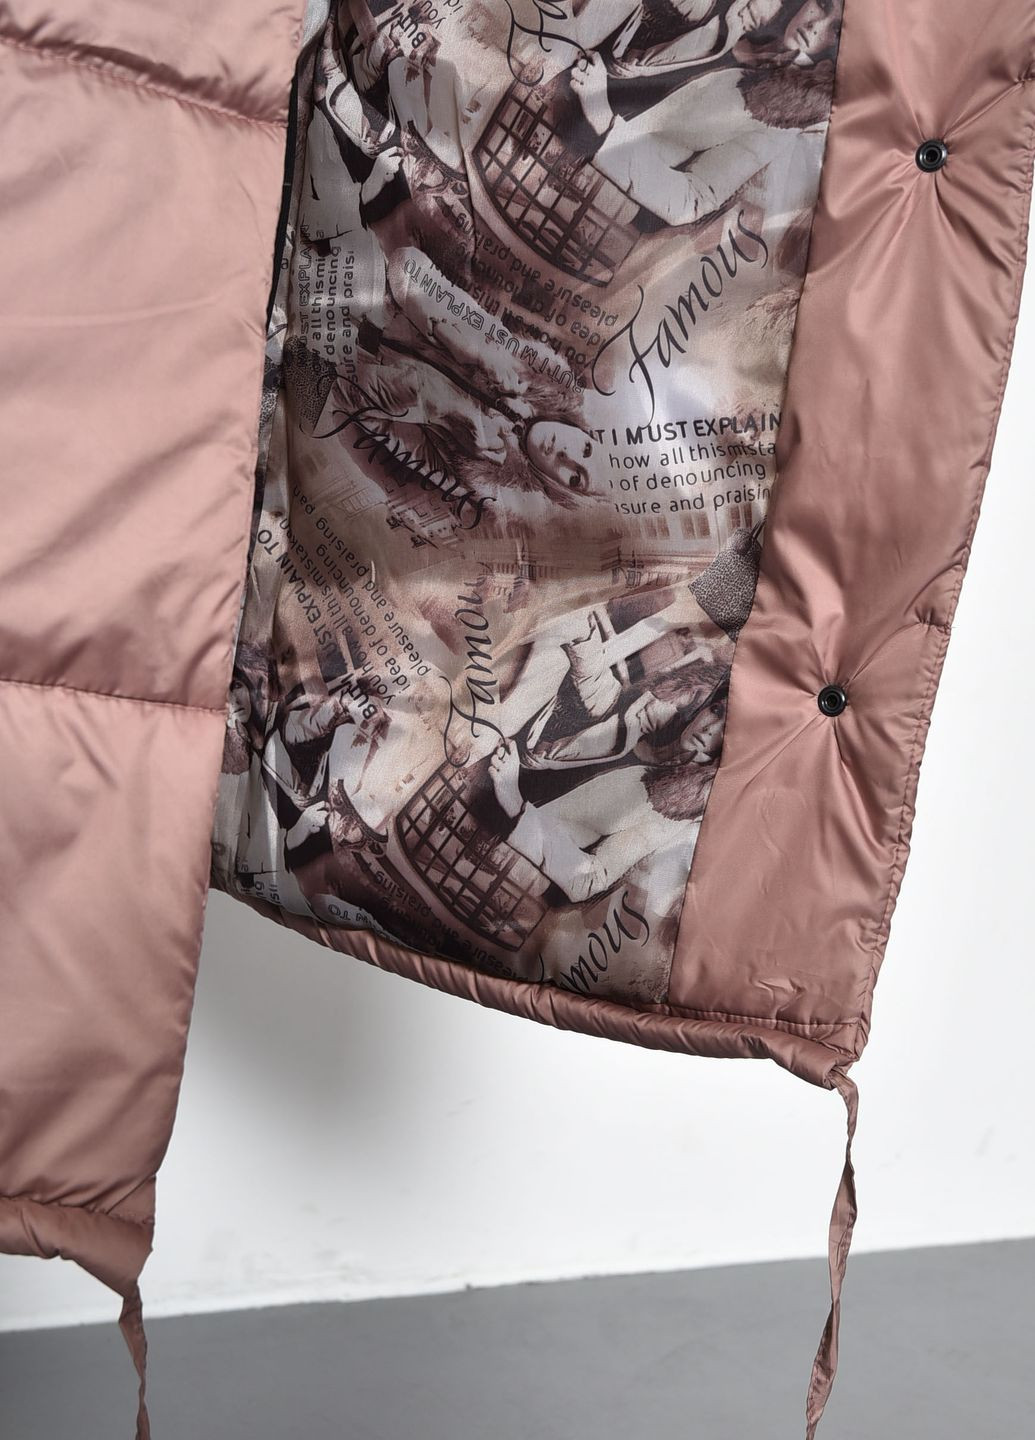 Коричневая зимняя куртка женская еврозима удлиненная цвета мокко Let's Shop